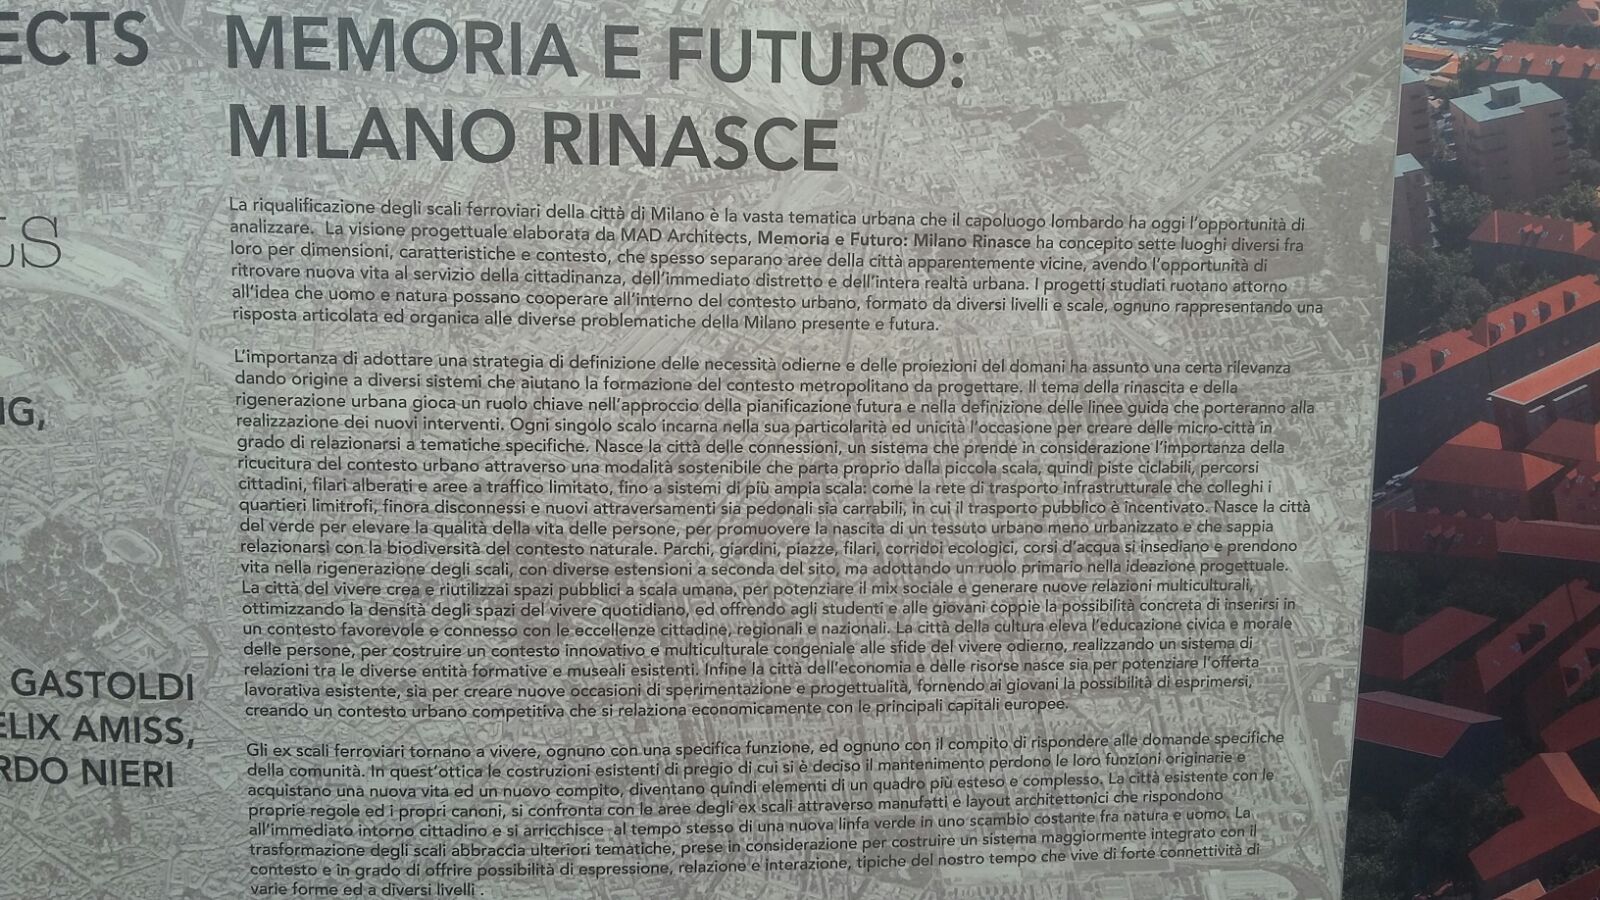 Il manifesto dello scenario "Memoria e futuro: Milano rinasce"